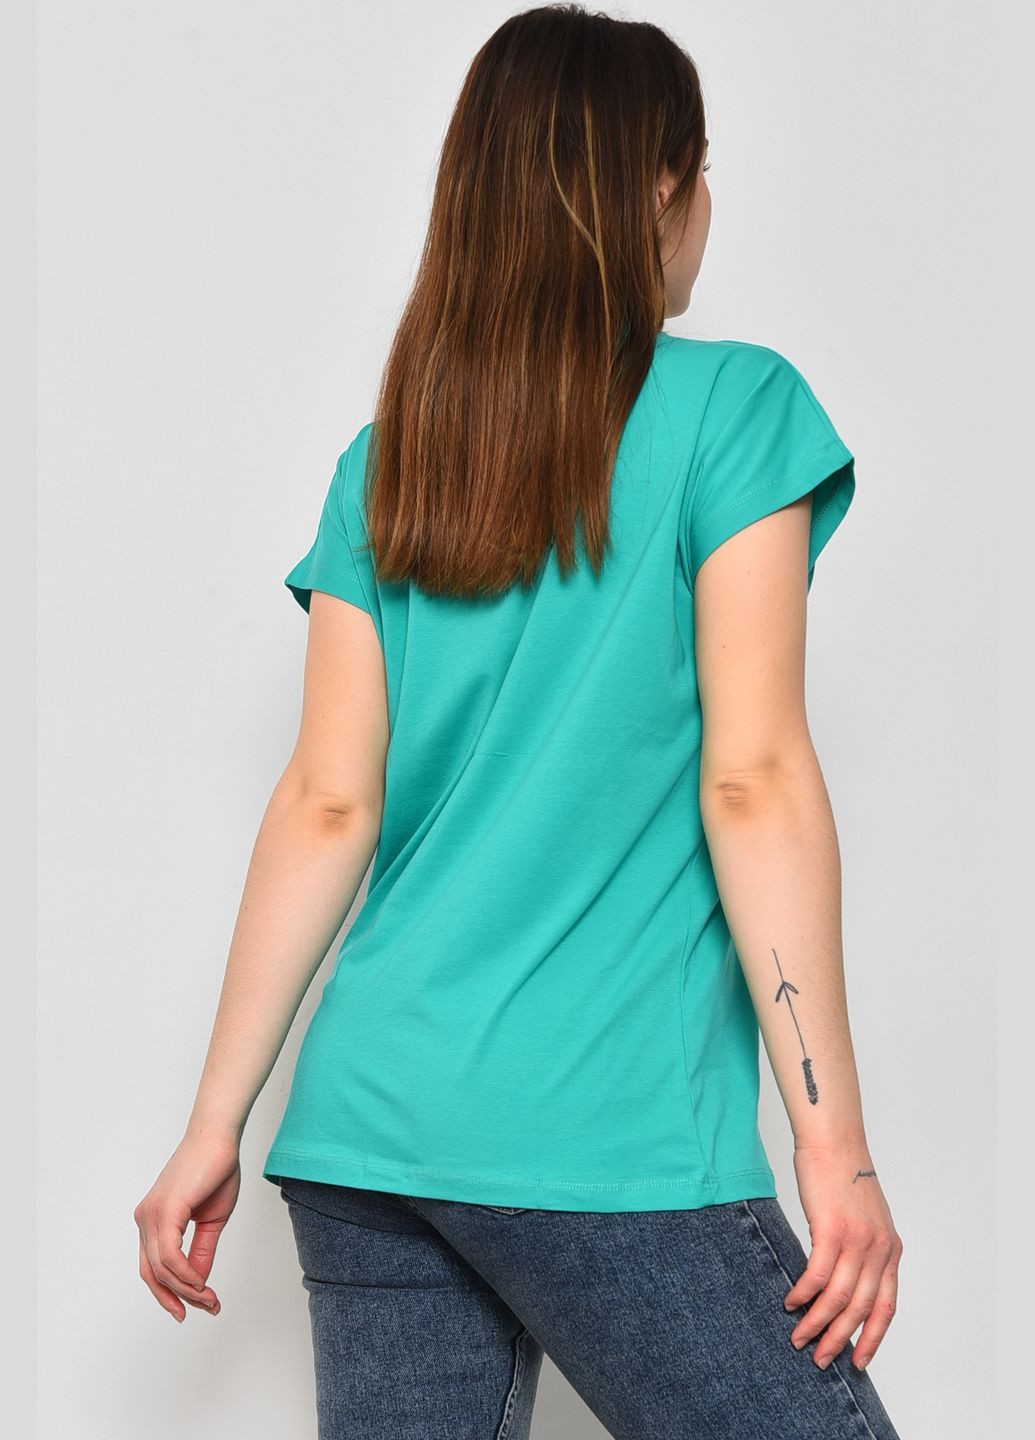 Зеленая летняя футболка женская полубатальная с рисунком зеленого цвета Let's Shop